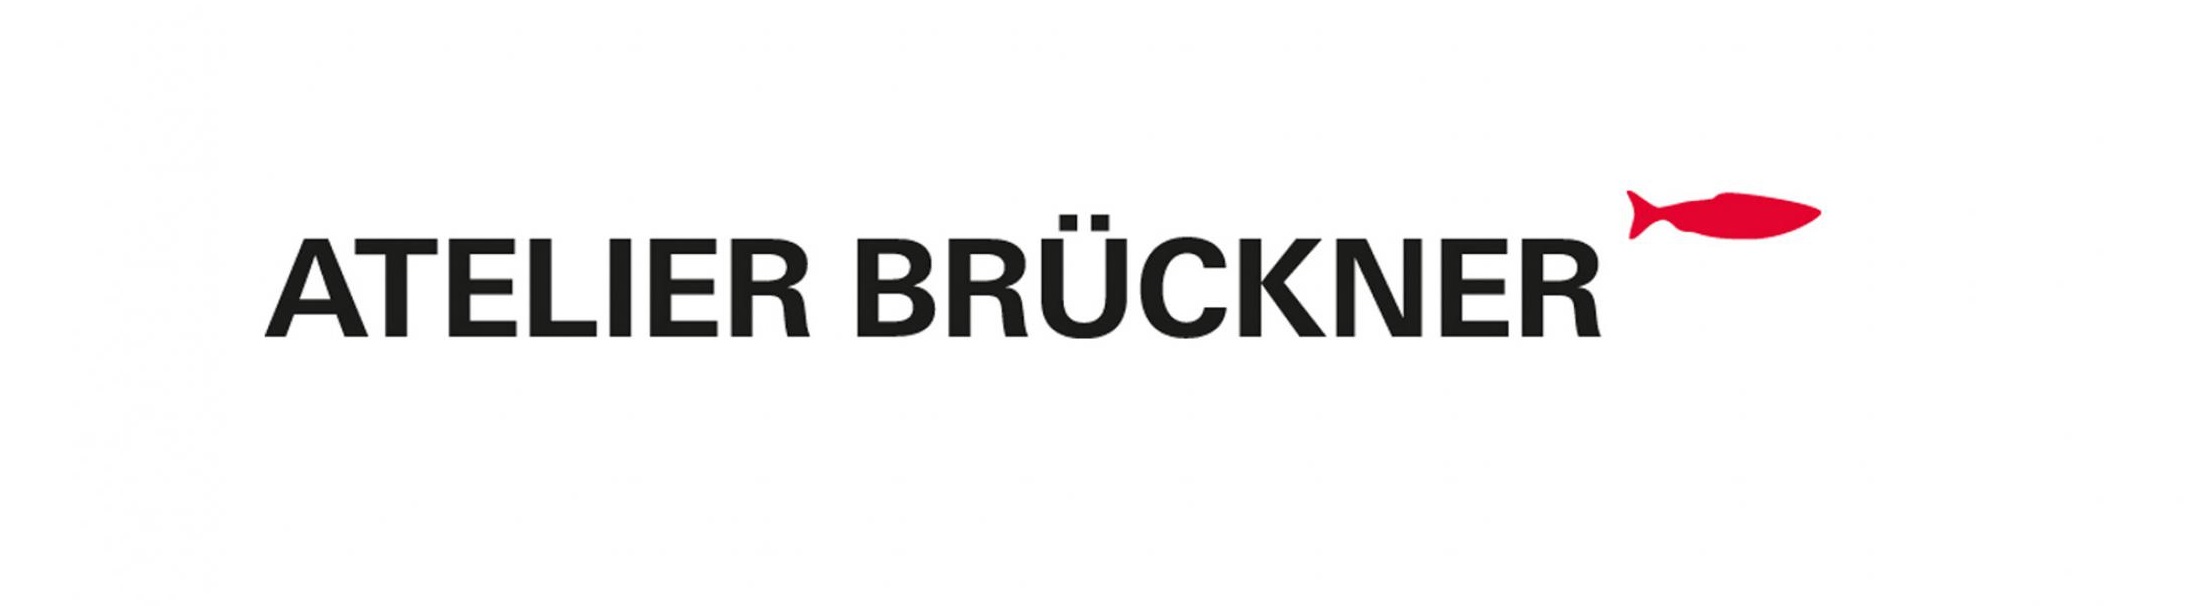 Atelier Brückner logo